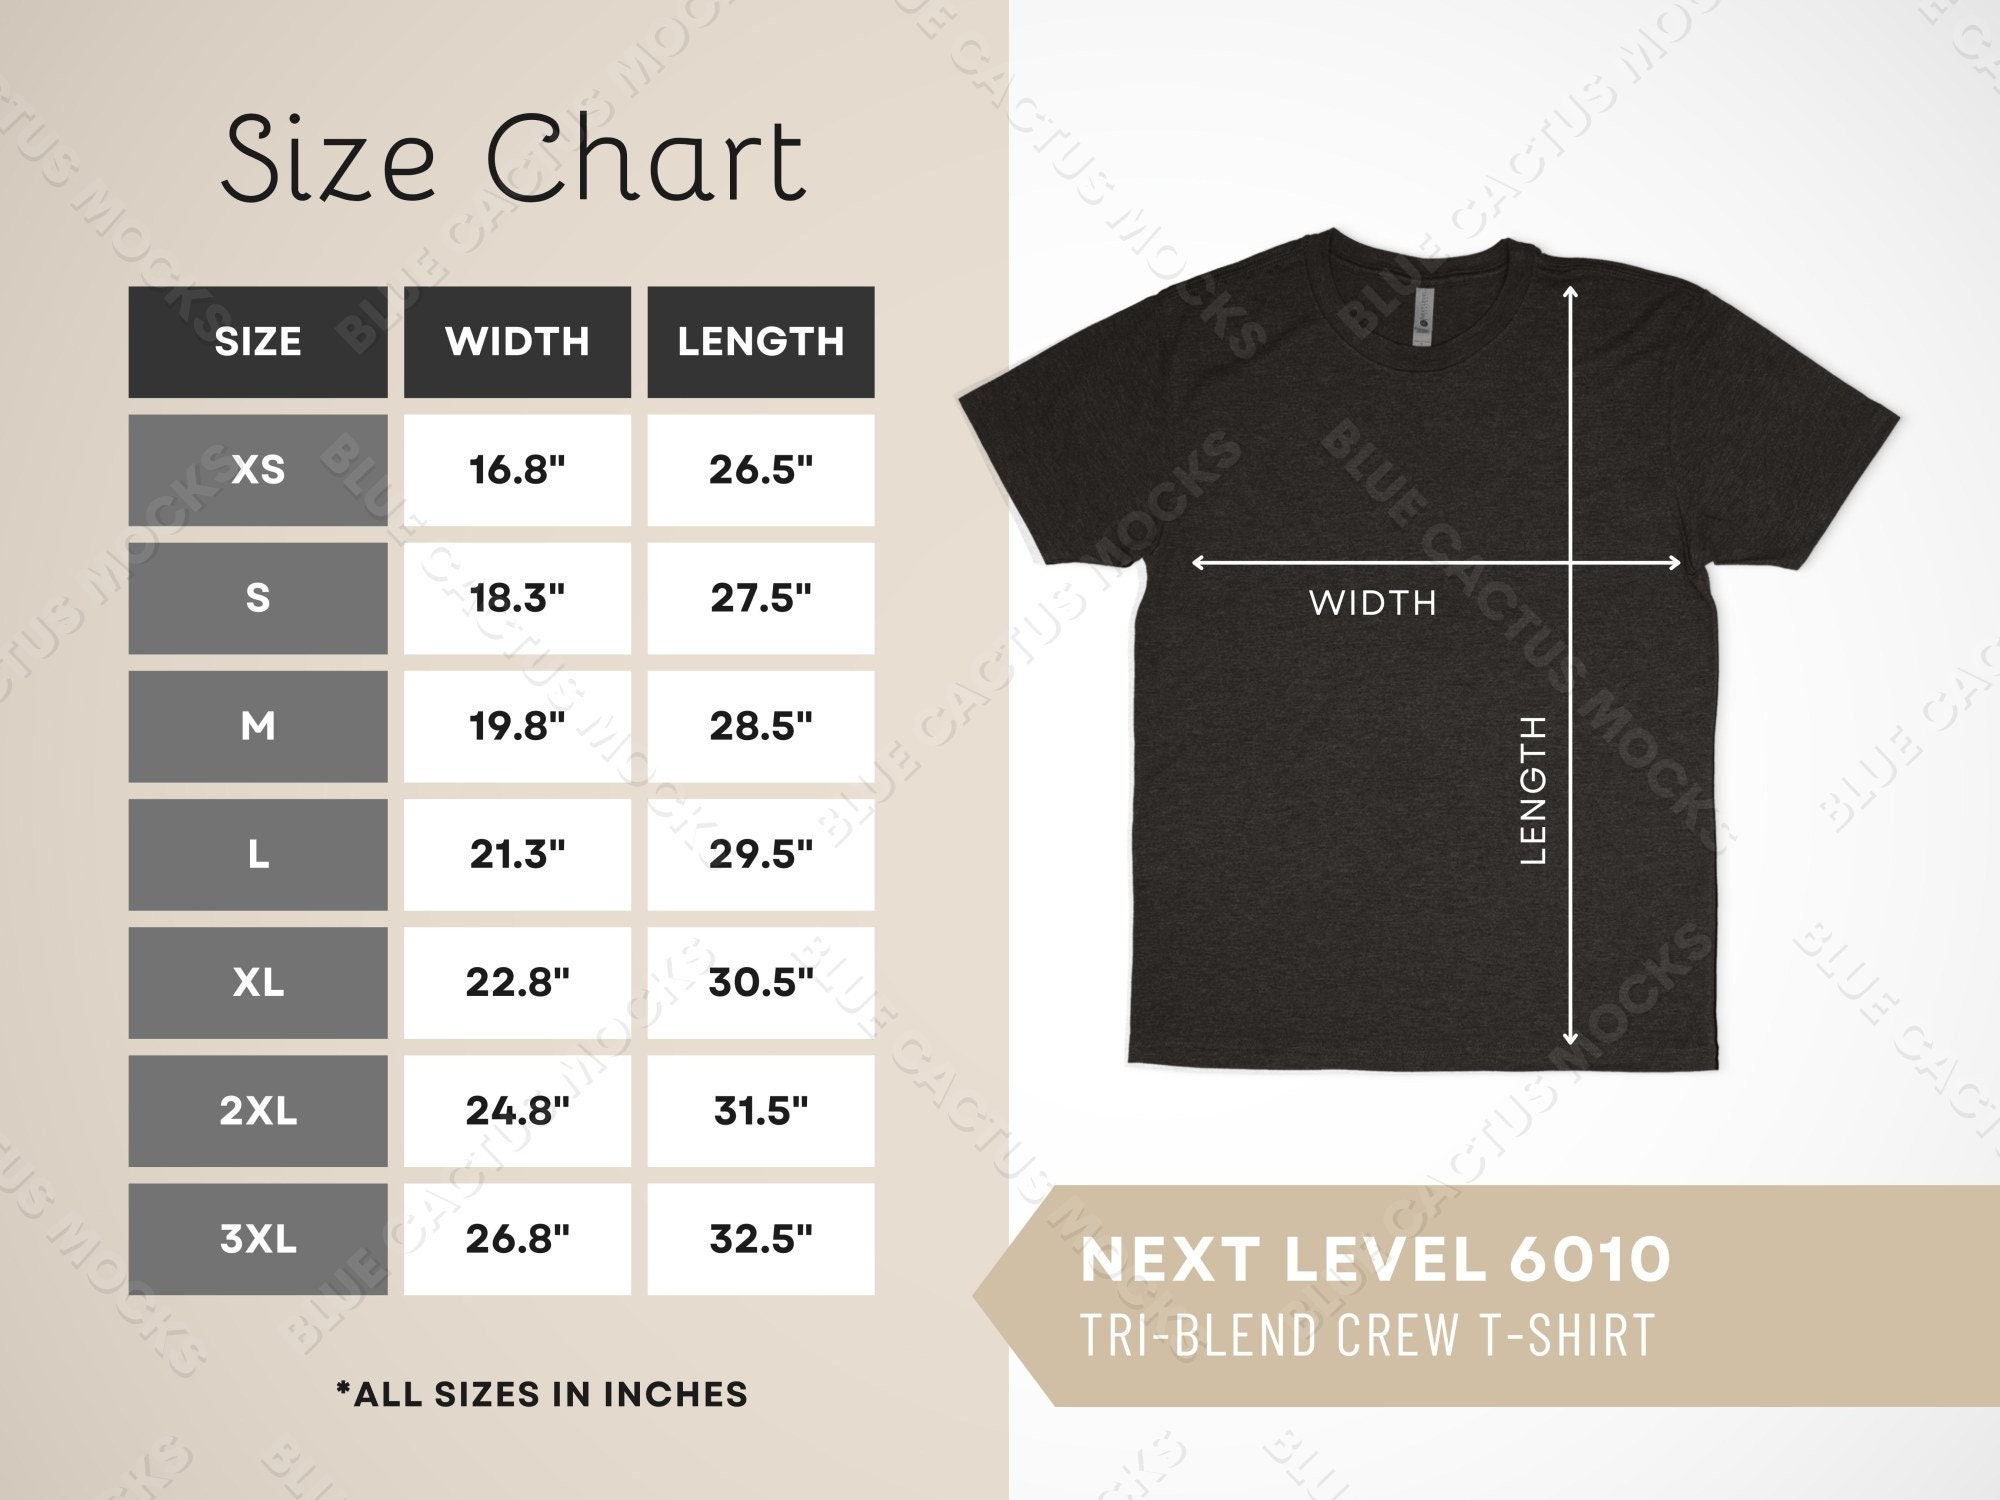 Next Level Triblend Crew T-Shirt - 6010